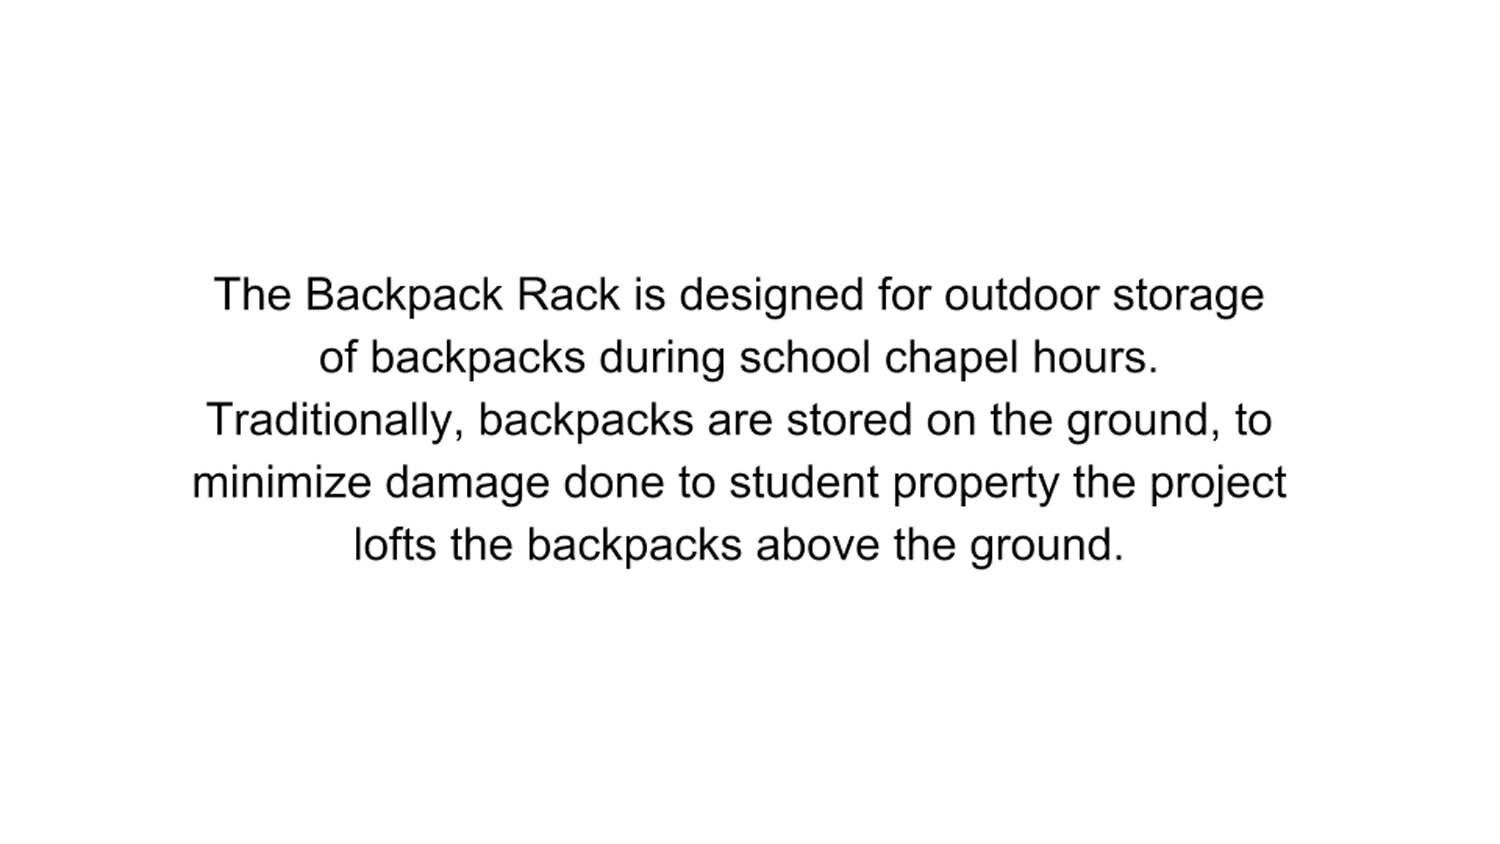 003-Backpack_Rack-28_zevdnp.jpg